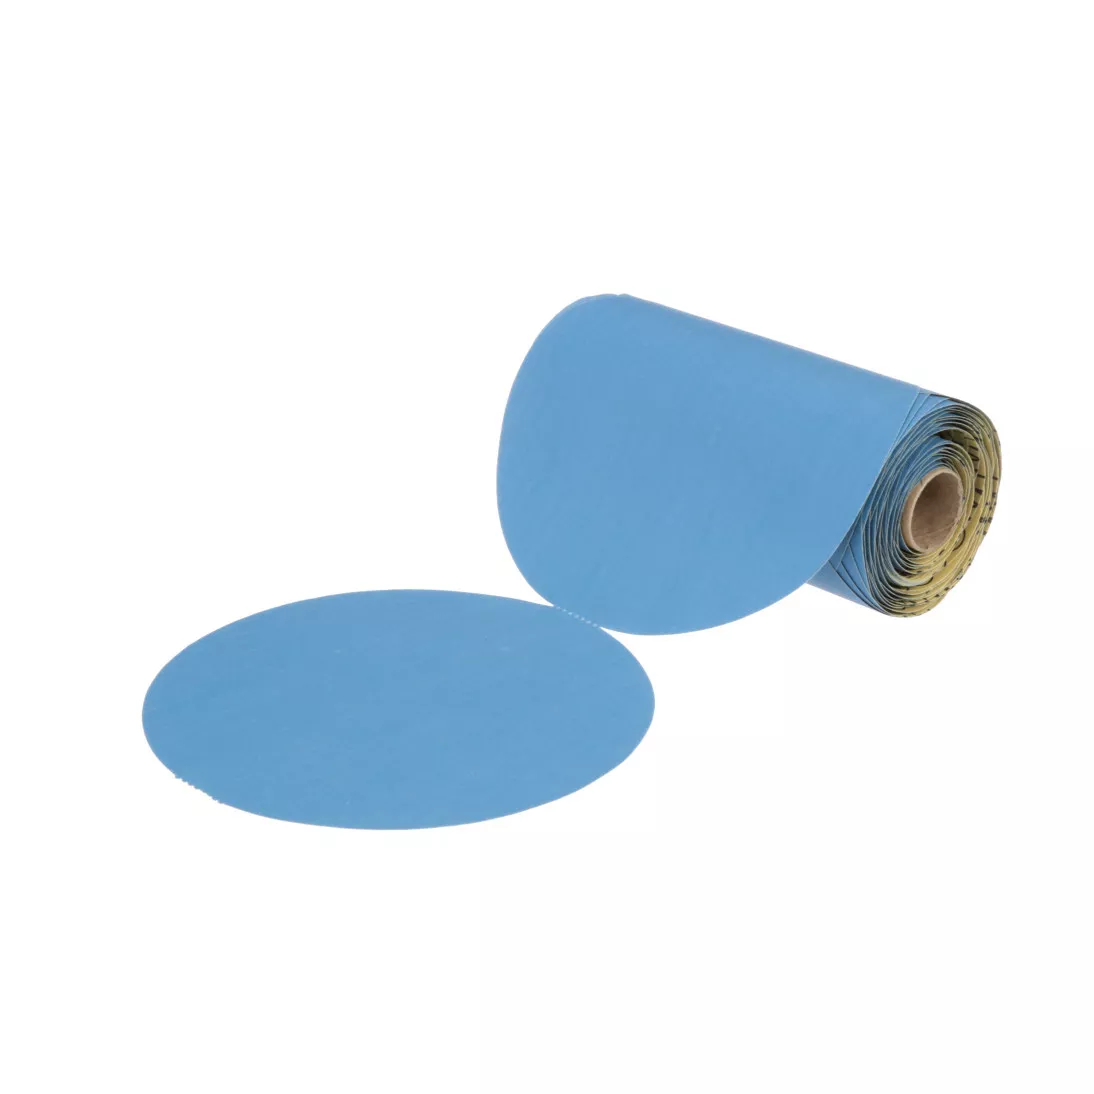 3M™ Stikit™ Blue Abrasive Disc Roll, 36211, 6 in, 400 grade, 100 discs
per roll, 5 rolls per case